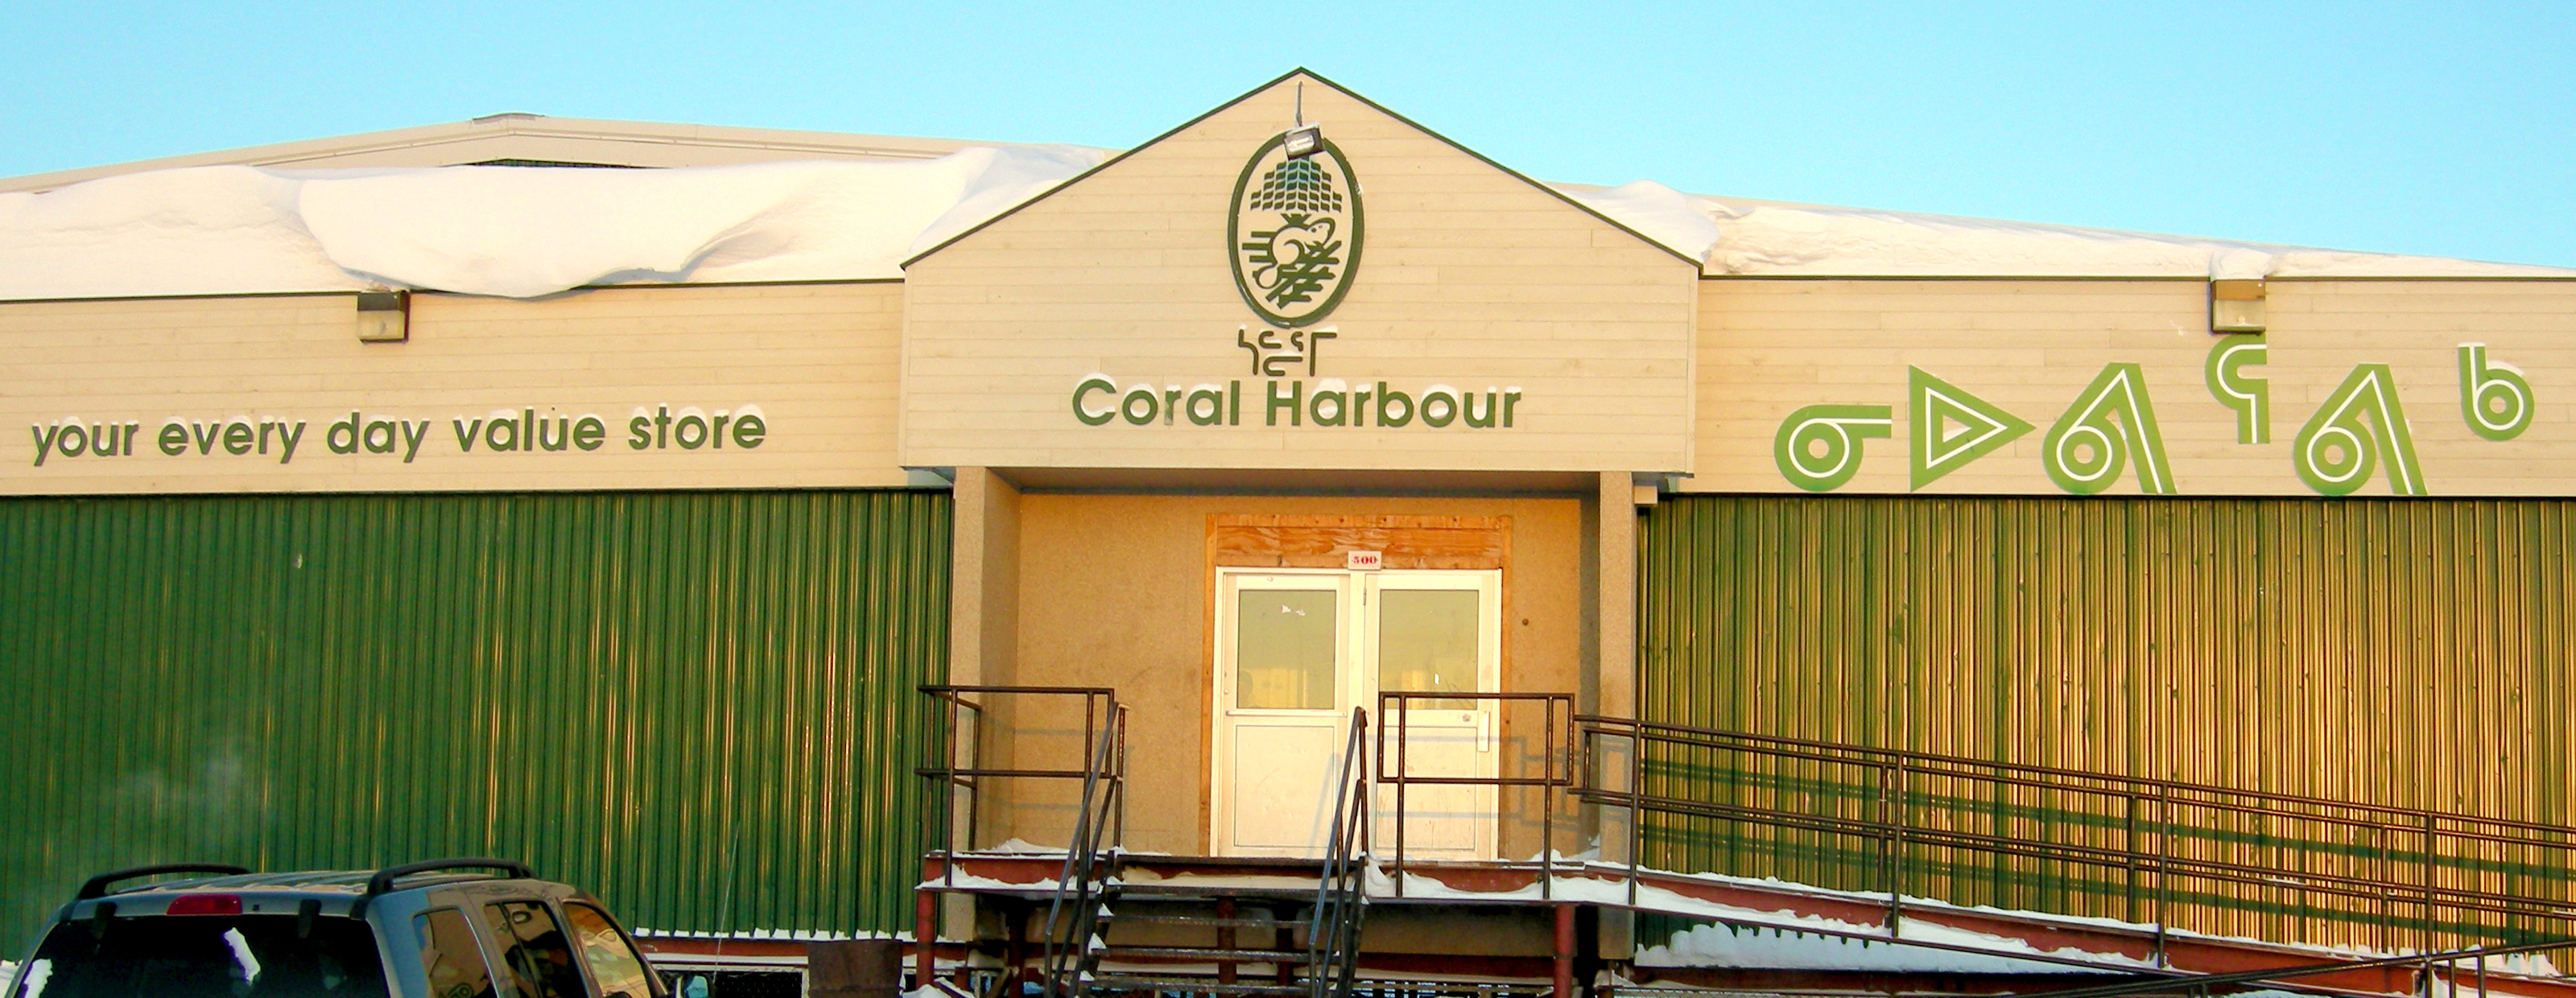 Coral Harbour.jpg (248 KB)